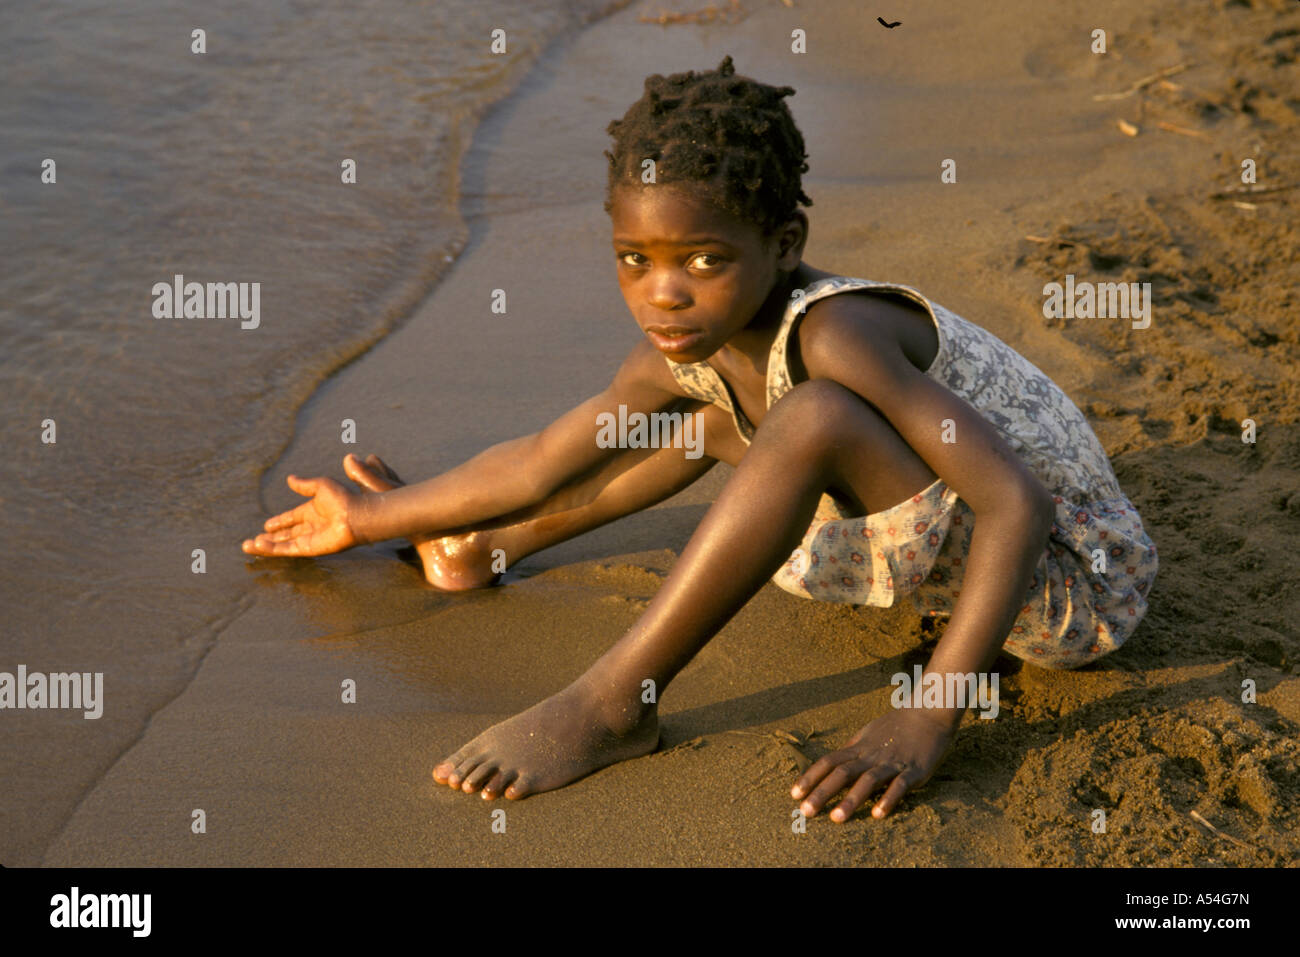 Ac1434 fille Painet mozambique lac Nyasa metangula heureux images play au pays en développement, pays de l'eau économiquement moins Banque D'Images